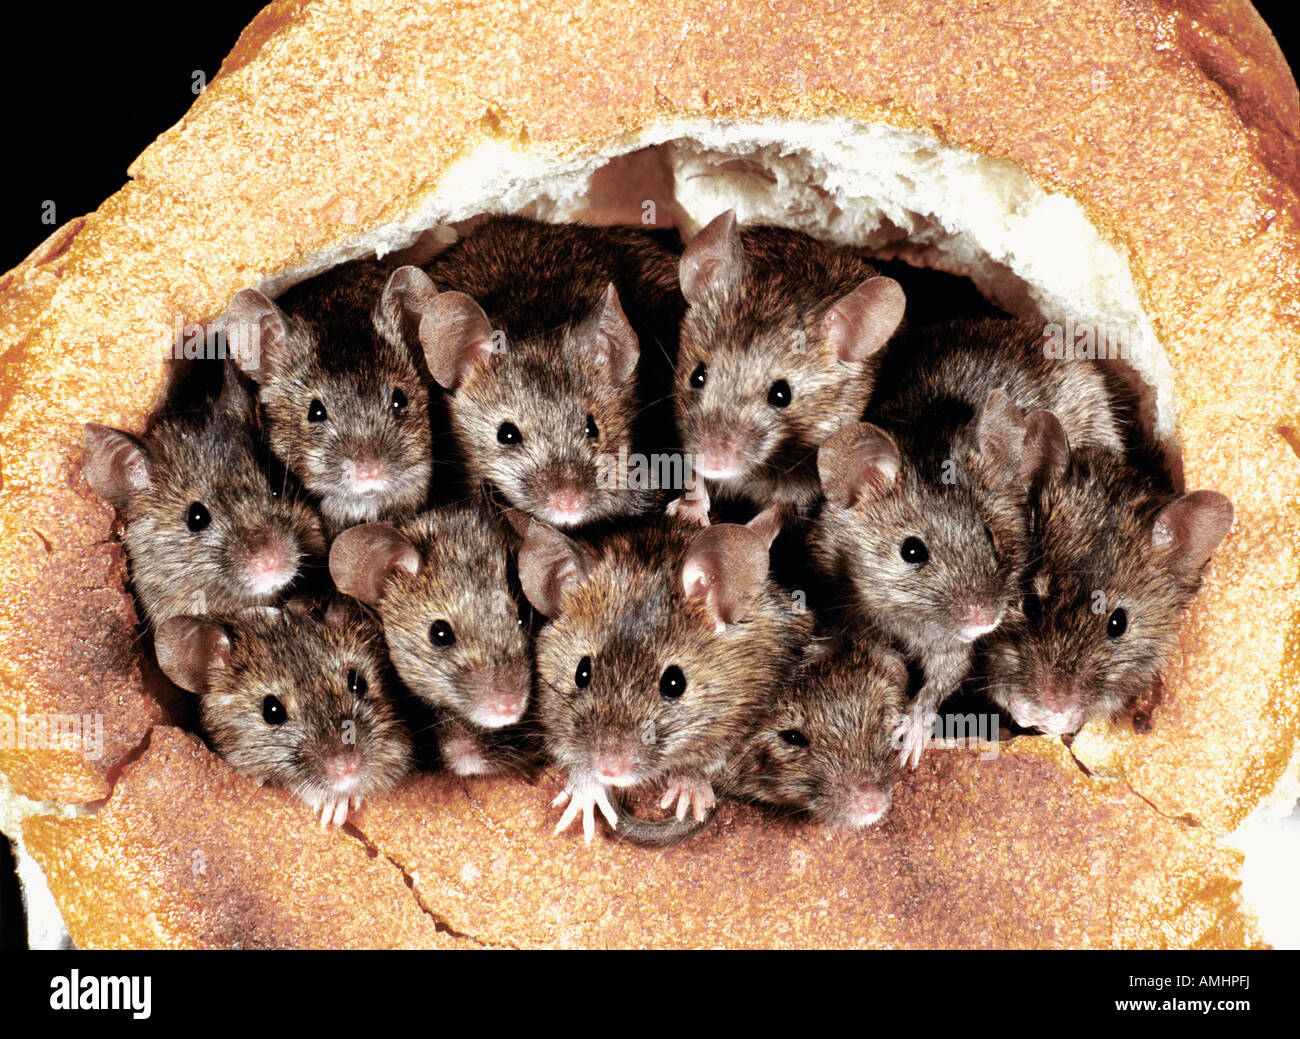 Souris domestique La souris Mus musculus dans le pain Europa Europe animal animaux adultes format horizontal Mammifères Mammifères souris pe Banque D'Images